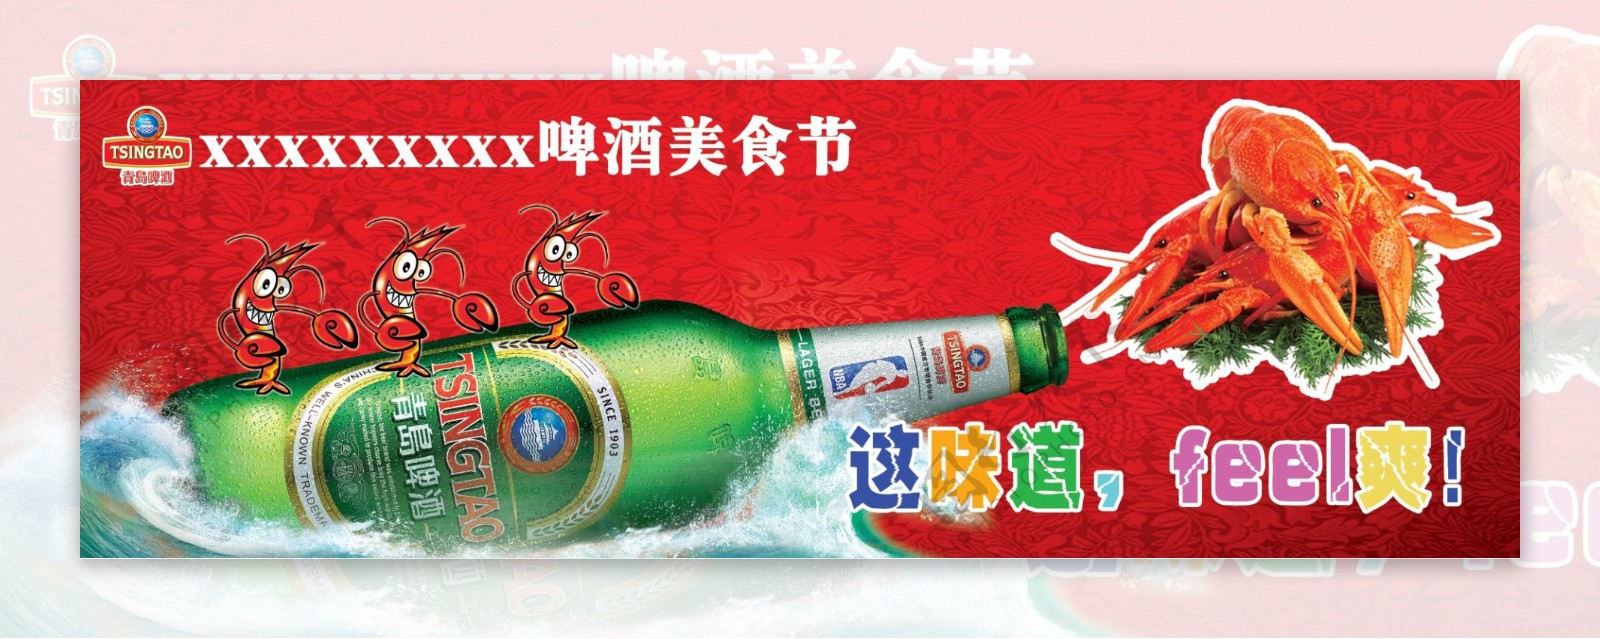 啤酒龙虾美食节背景布